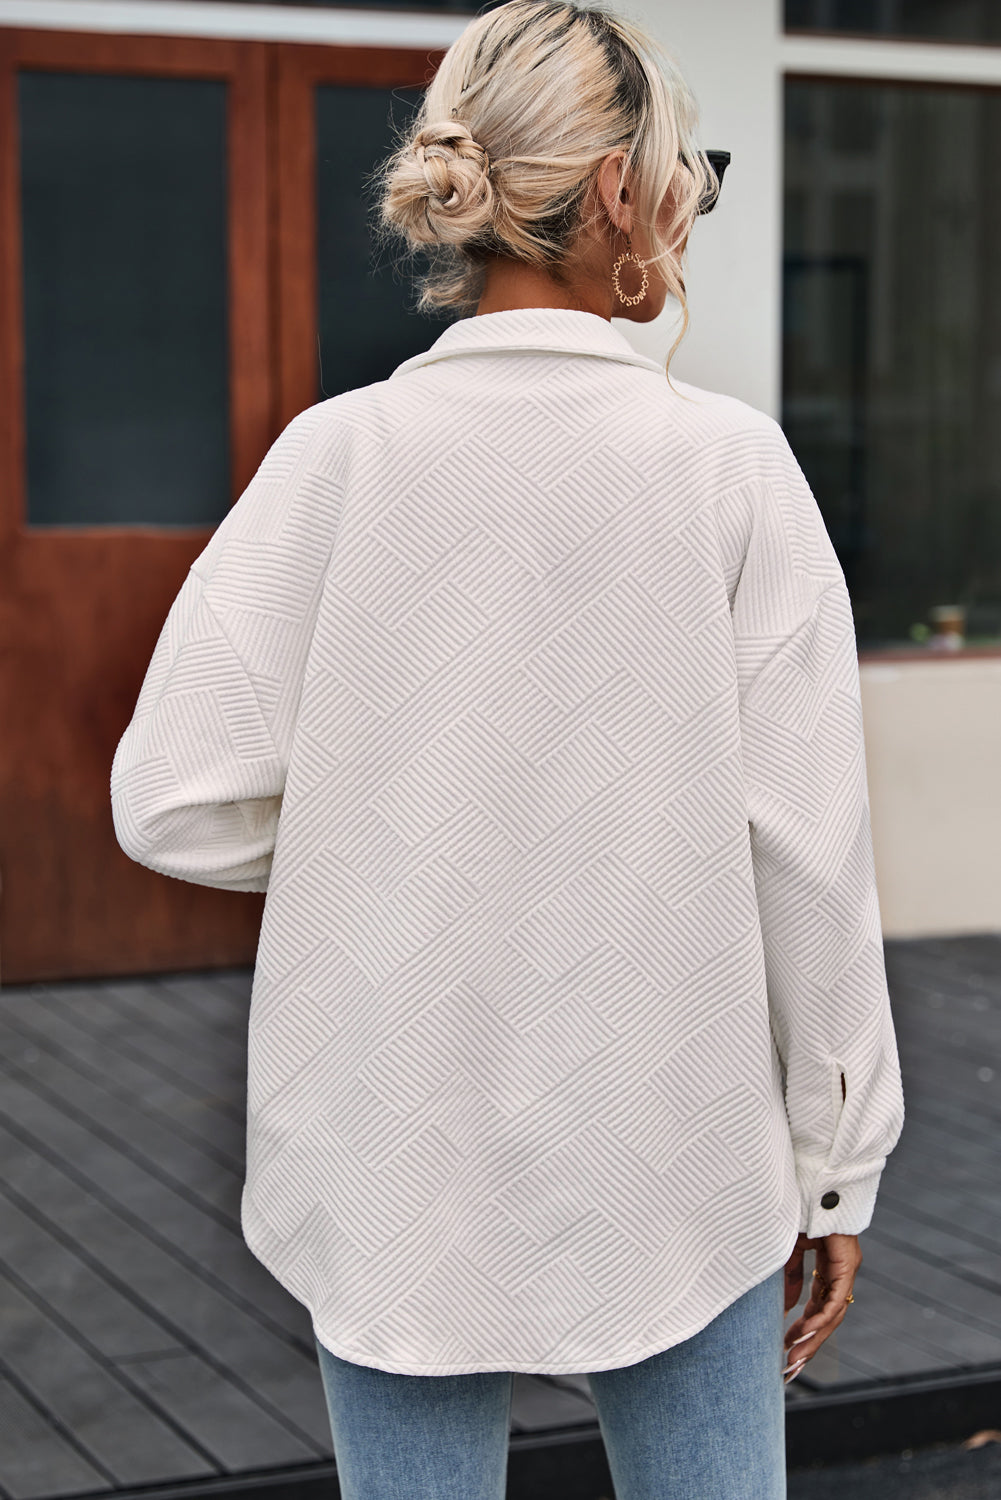 Schwarze, einfarbige, strukturierte, geknöpfte Hemdjacke mit Pattentasche